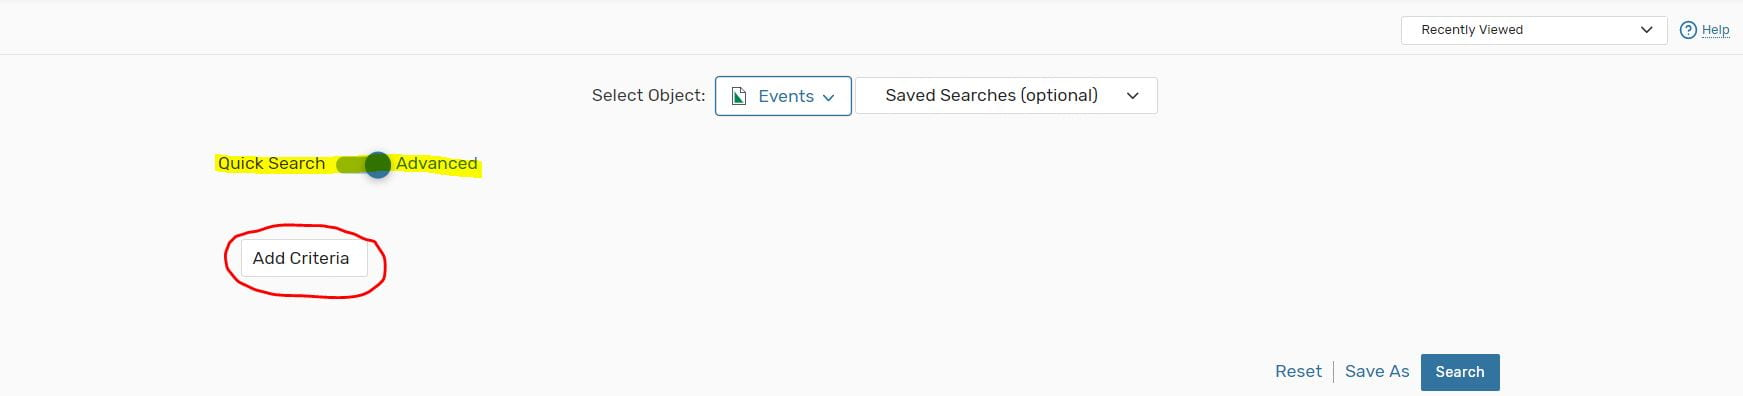 Search add criteria option in 25Live